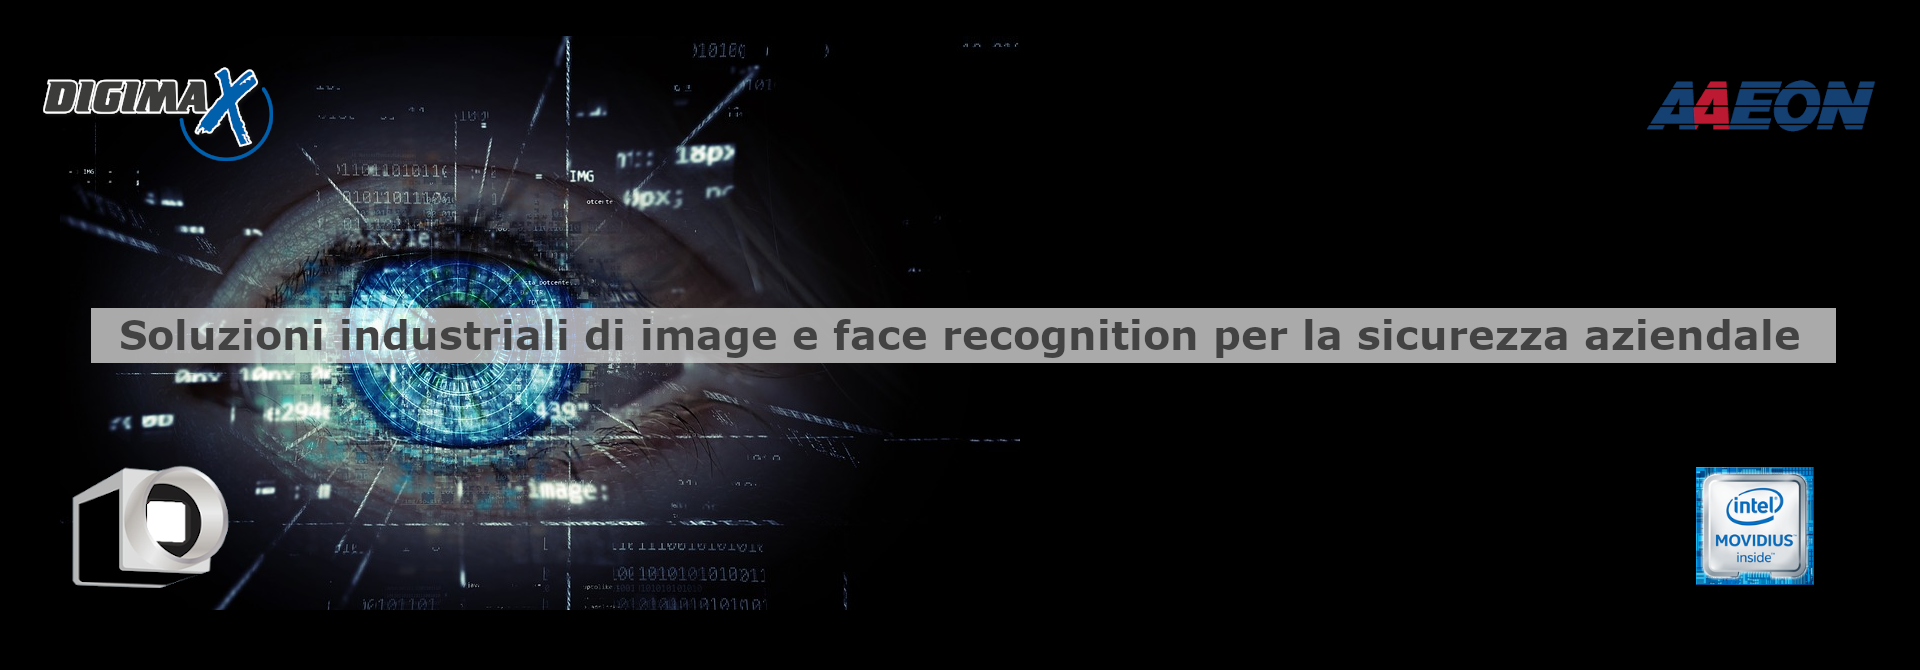 Applicazioni di image e face recognition dedicati alla sicurezza aziendale